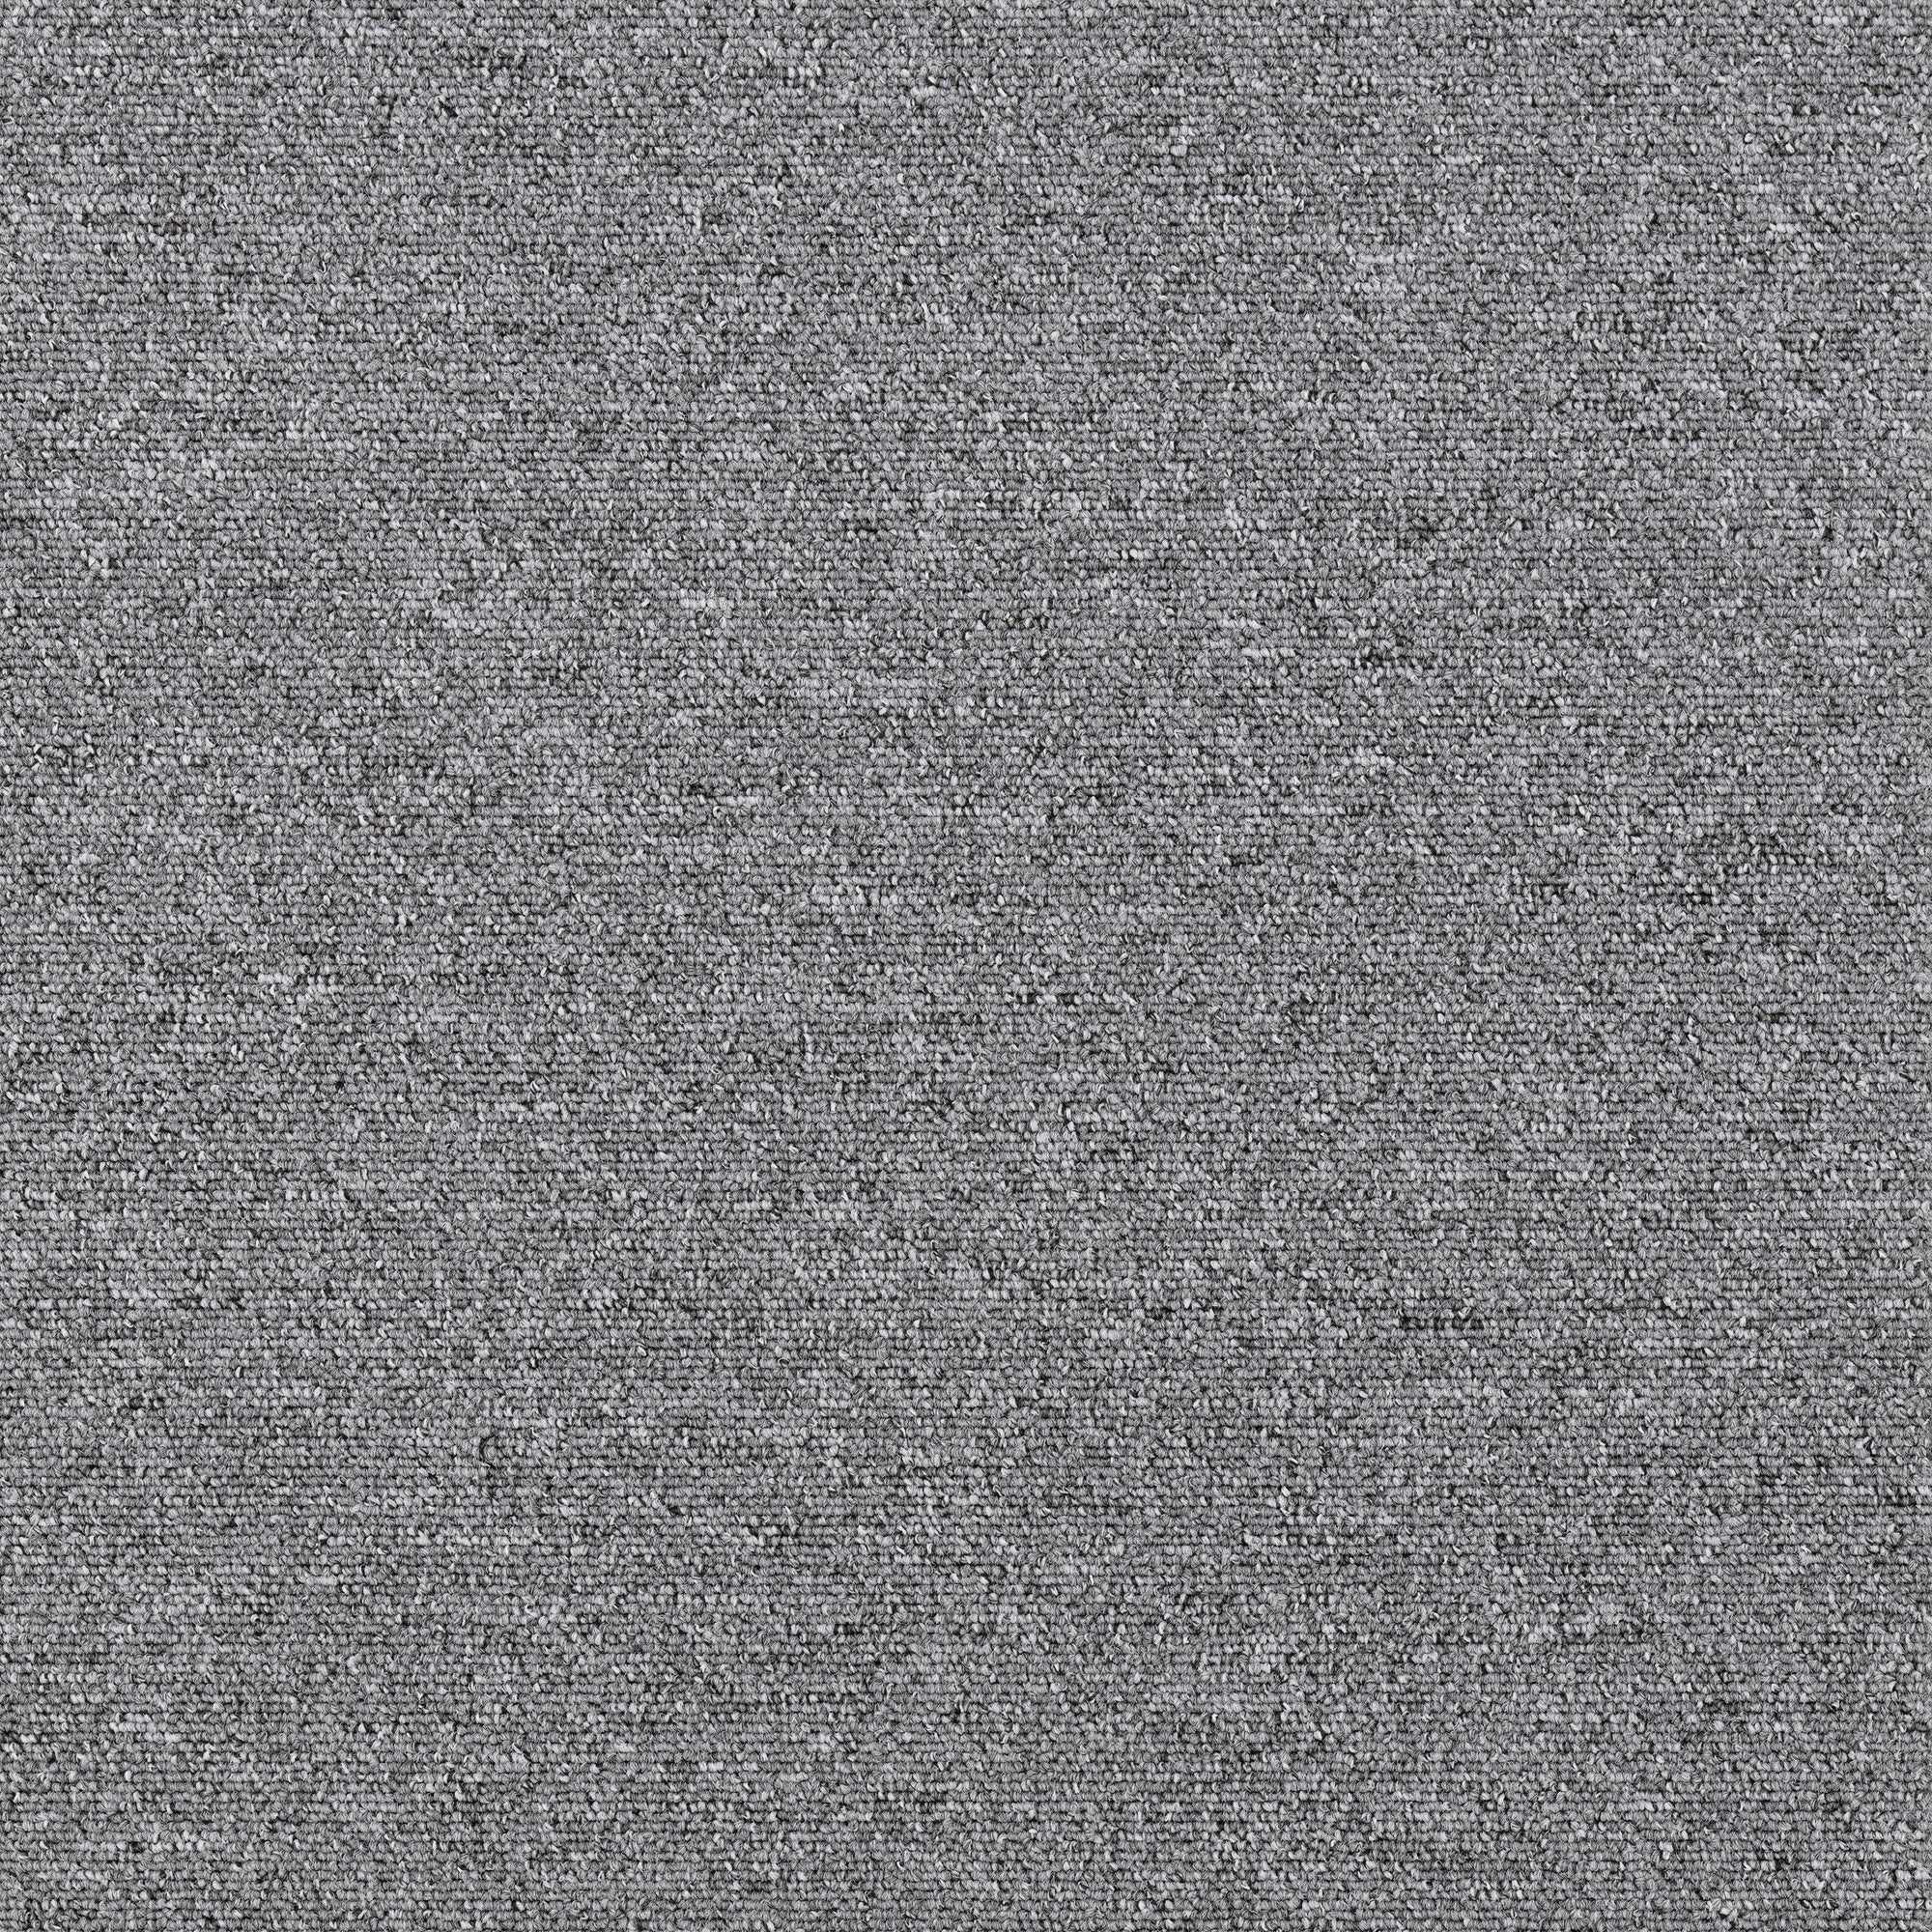 Plusfloor Rekka Pearl Grey carpet tiles for offices 100% Nylon